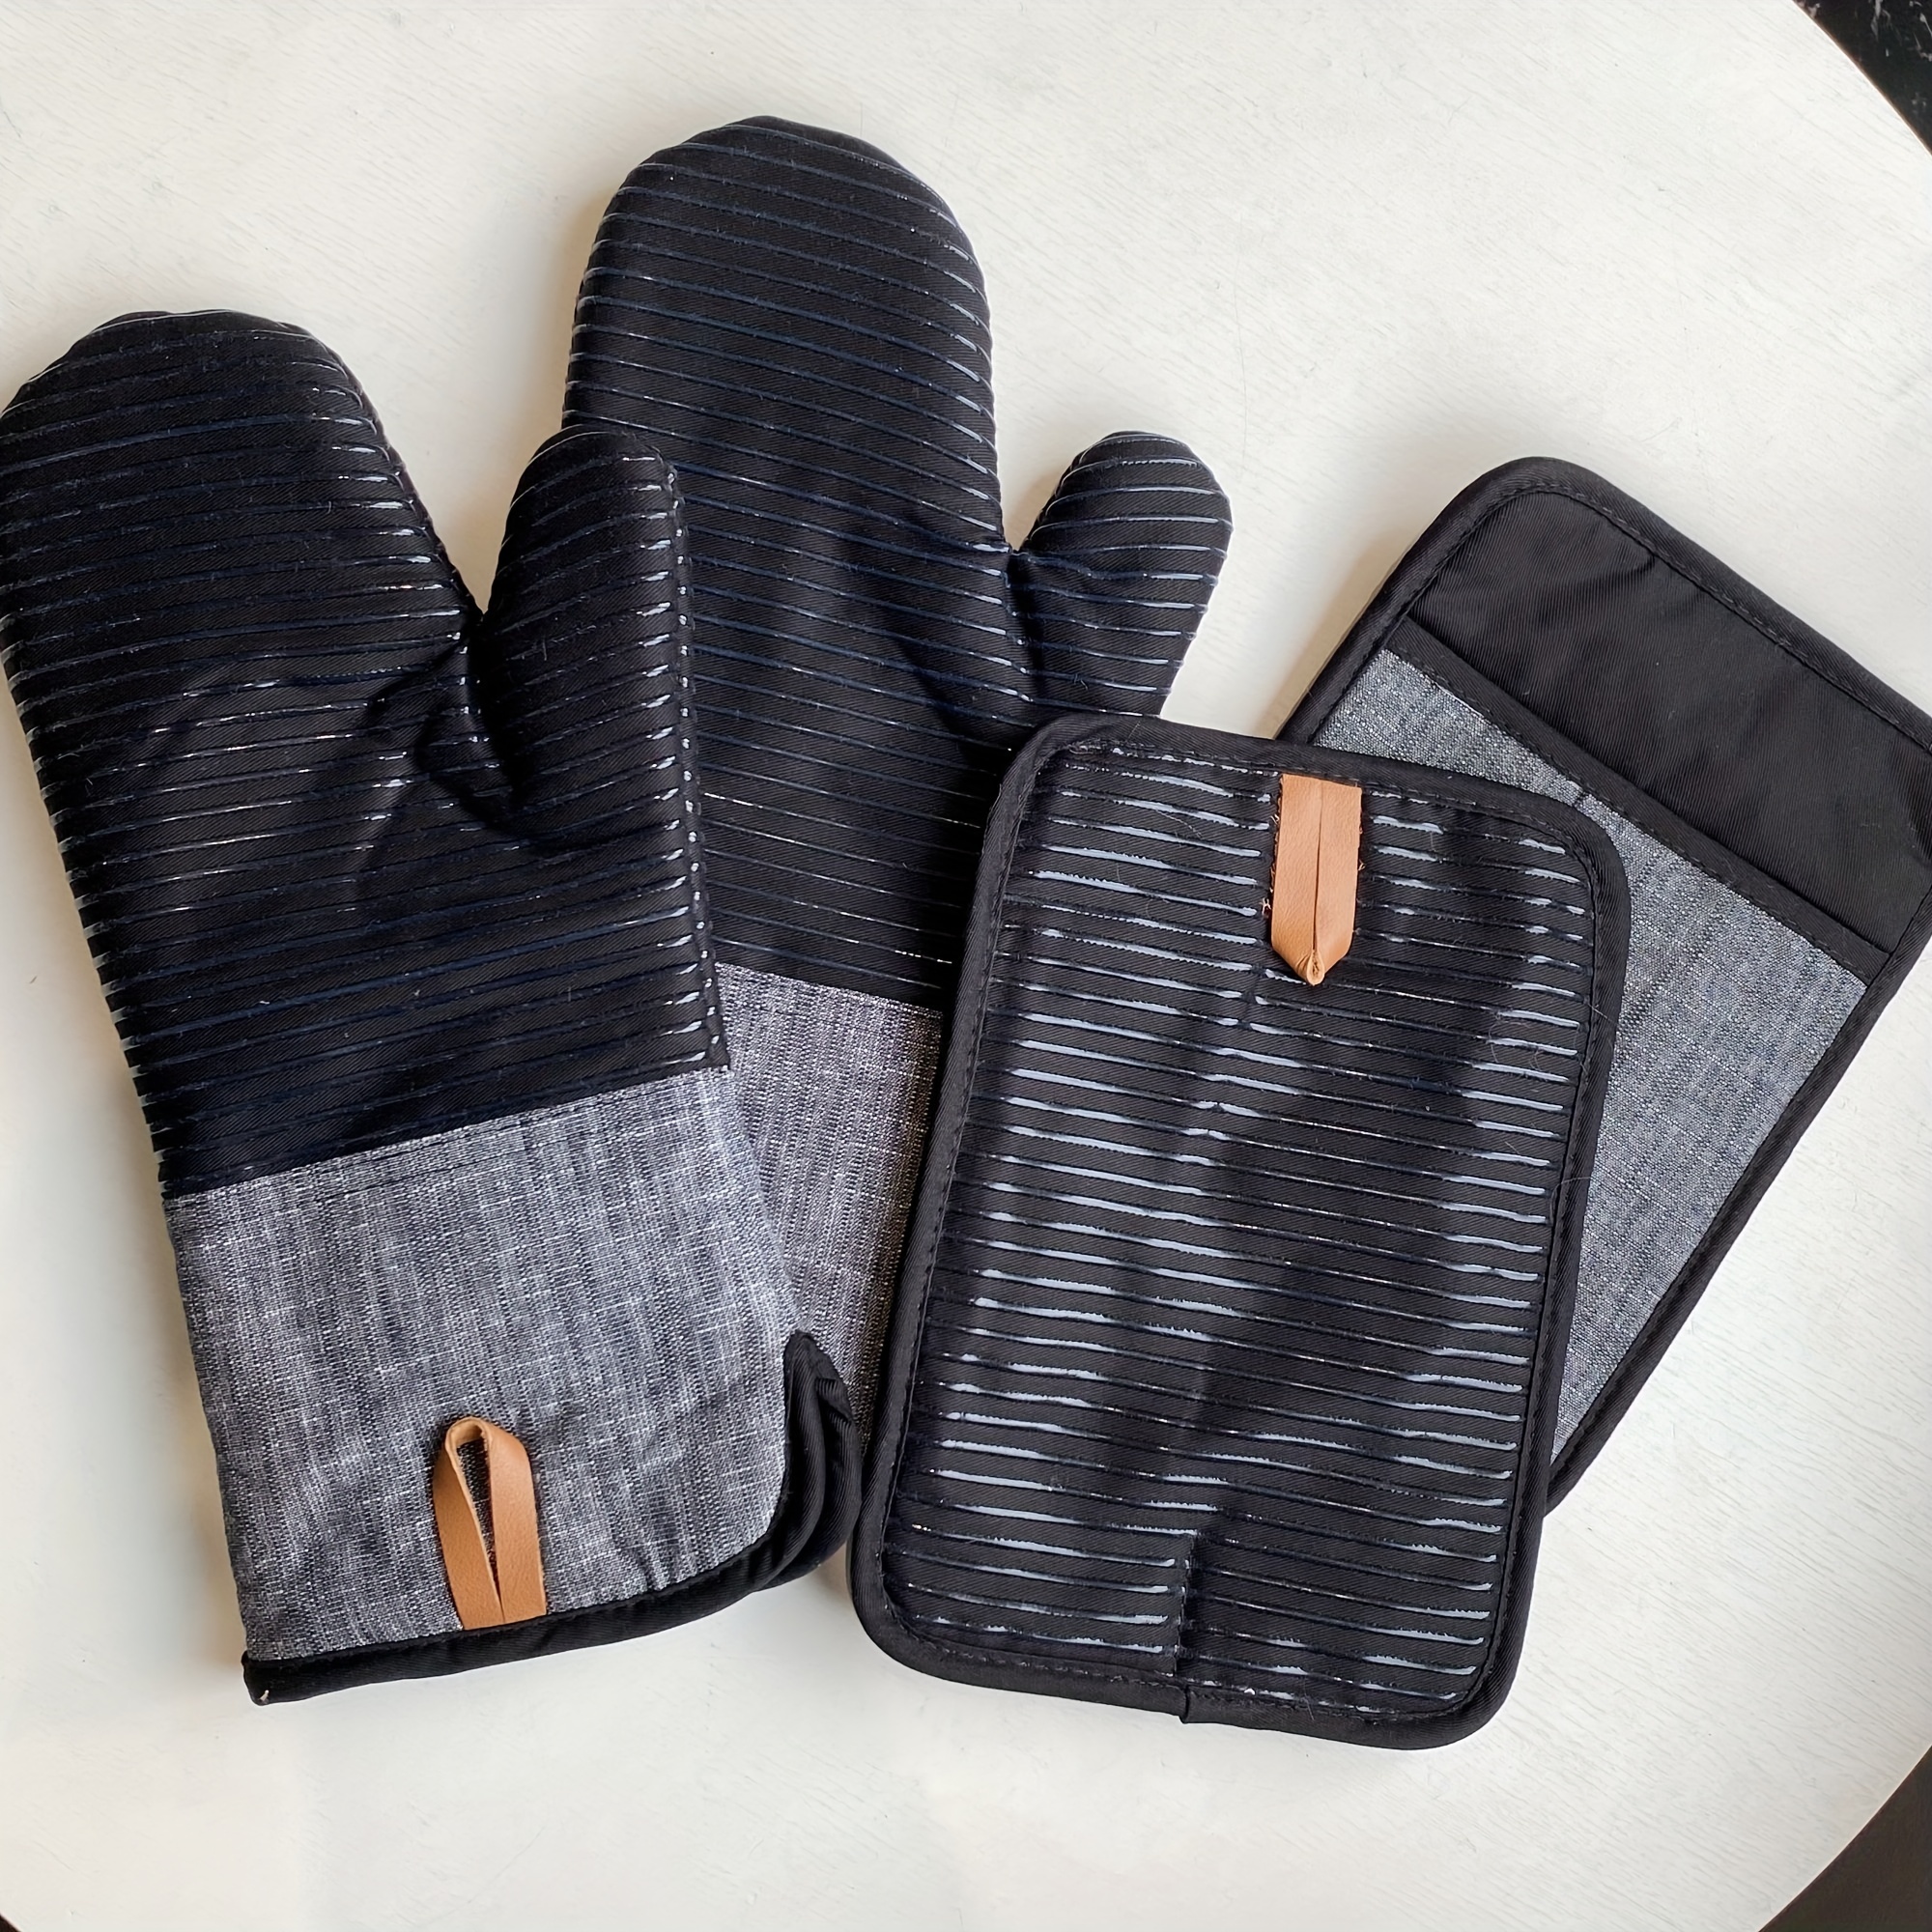 Oven Mitts Pot Holders Sets  Potholder Glove Heat Resistant